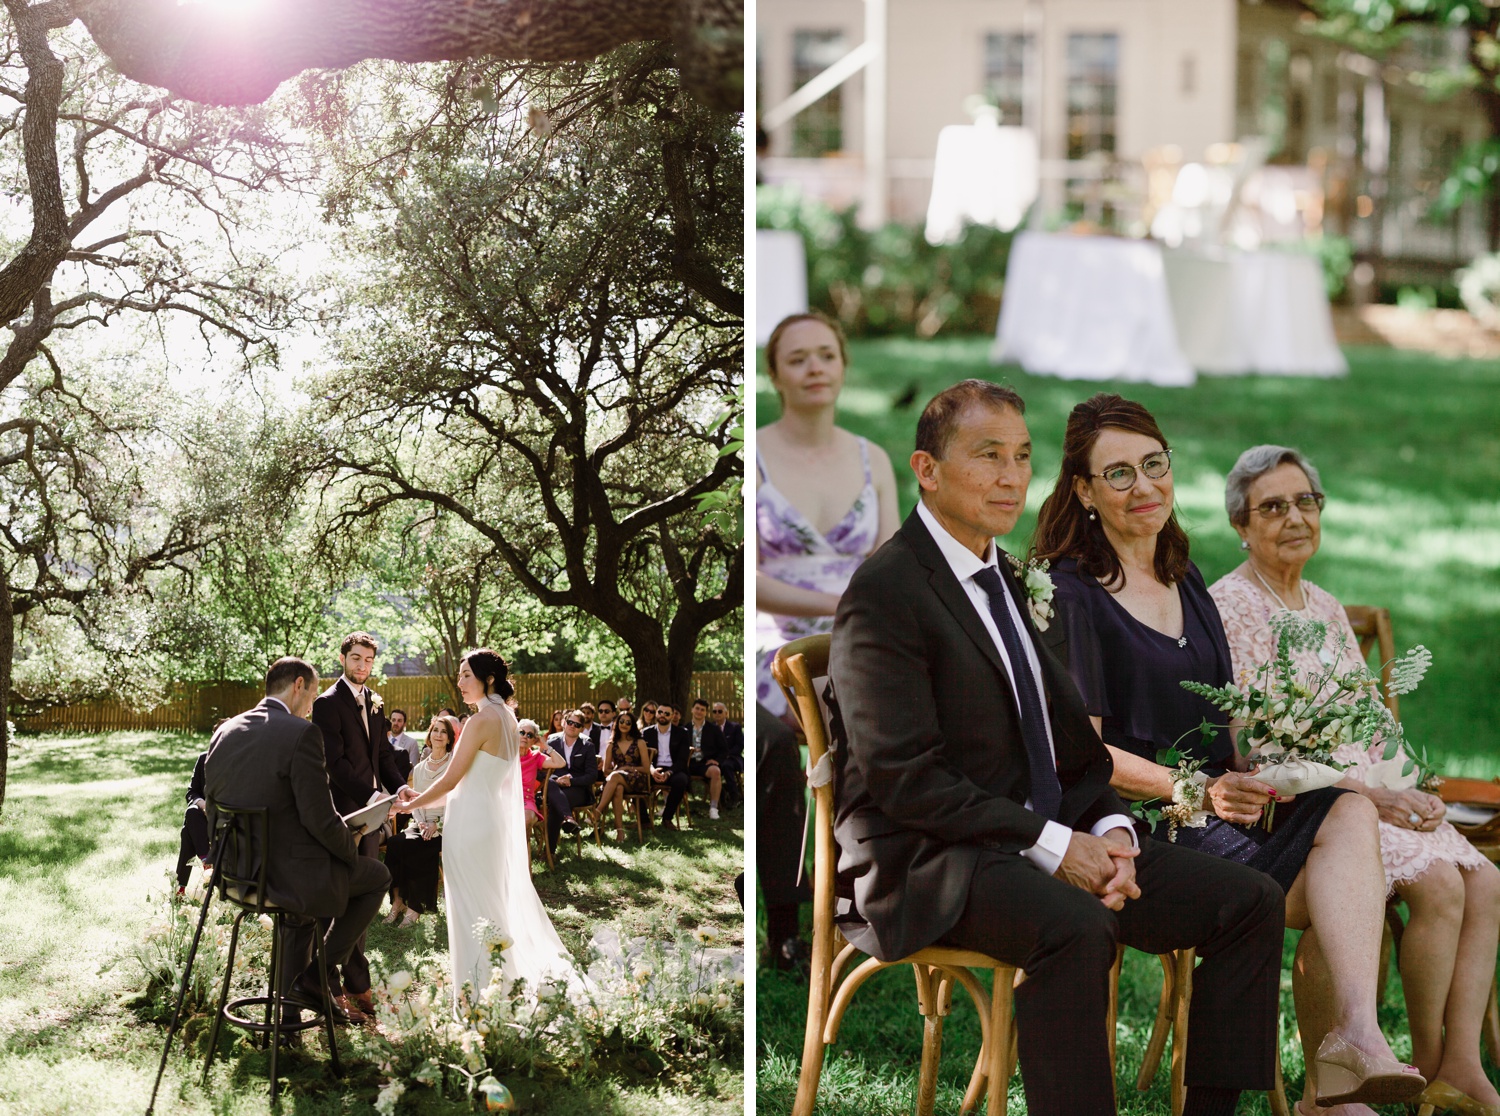 Outdoor wedding ceremony at Mattie's Austin